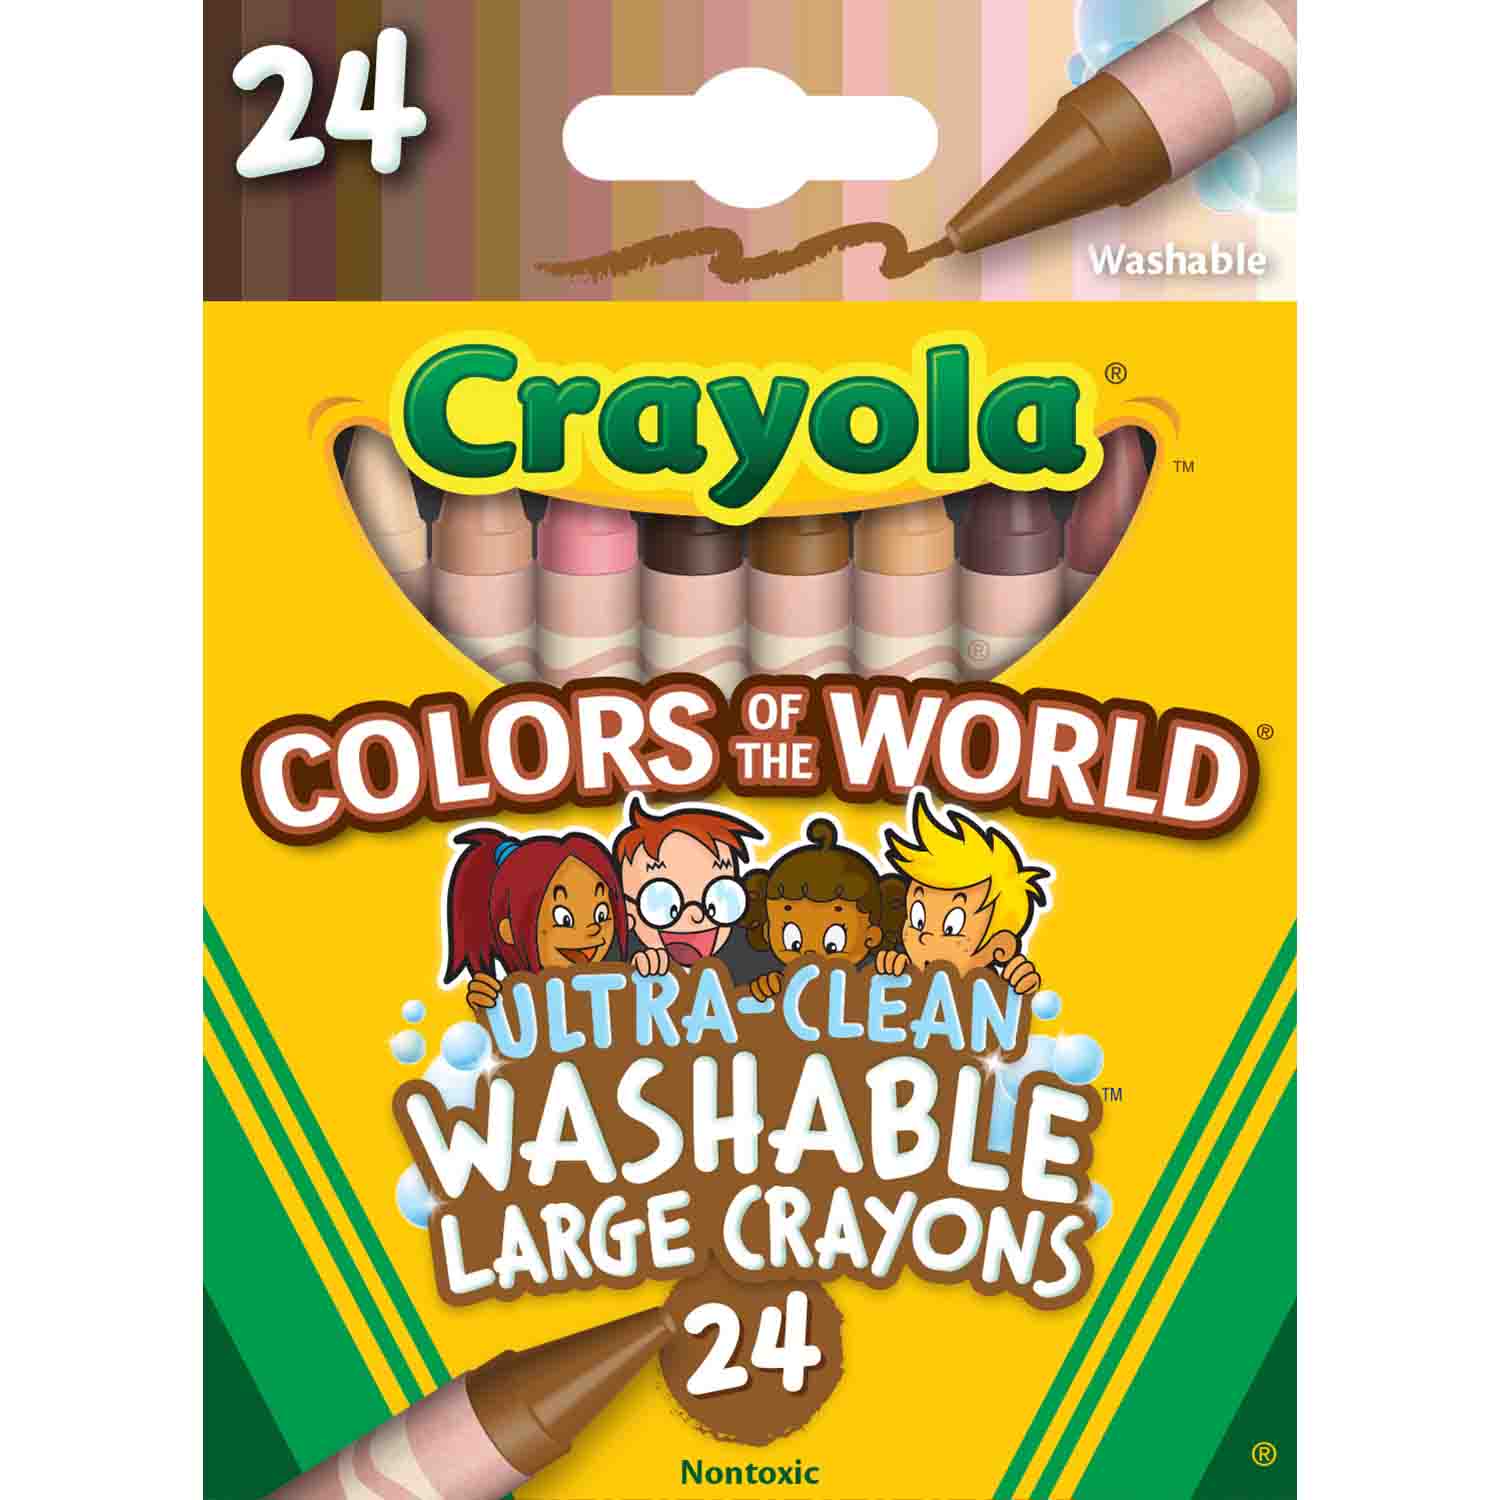 Crayola Crayons 24pak